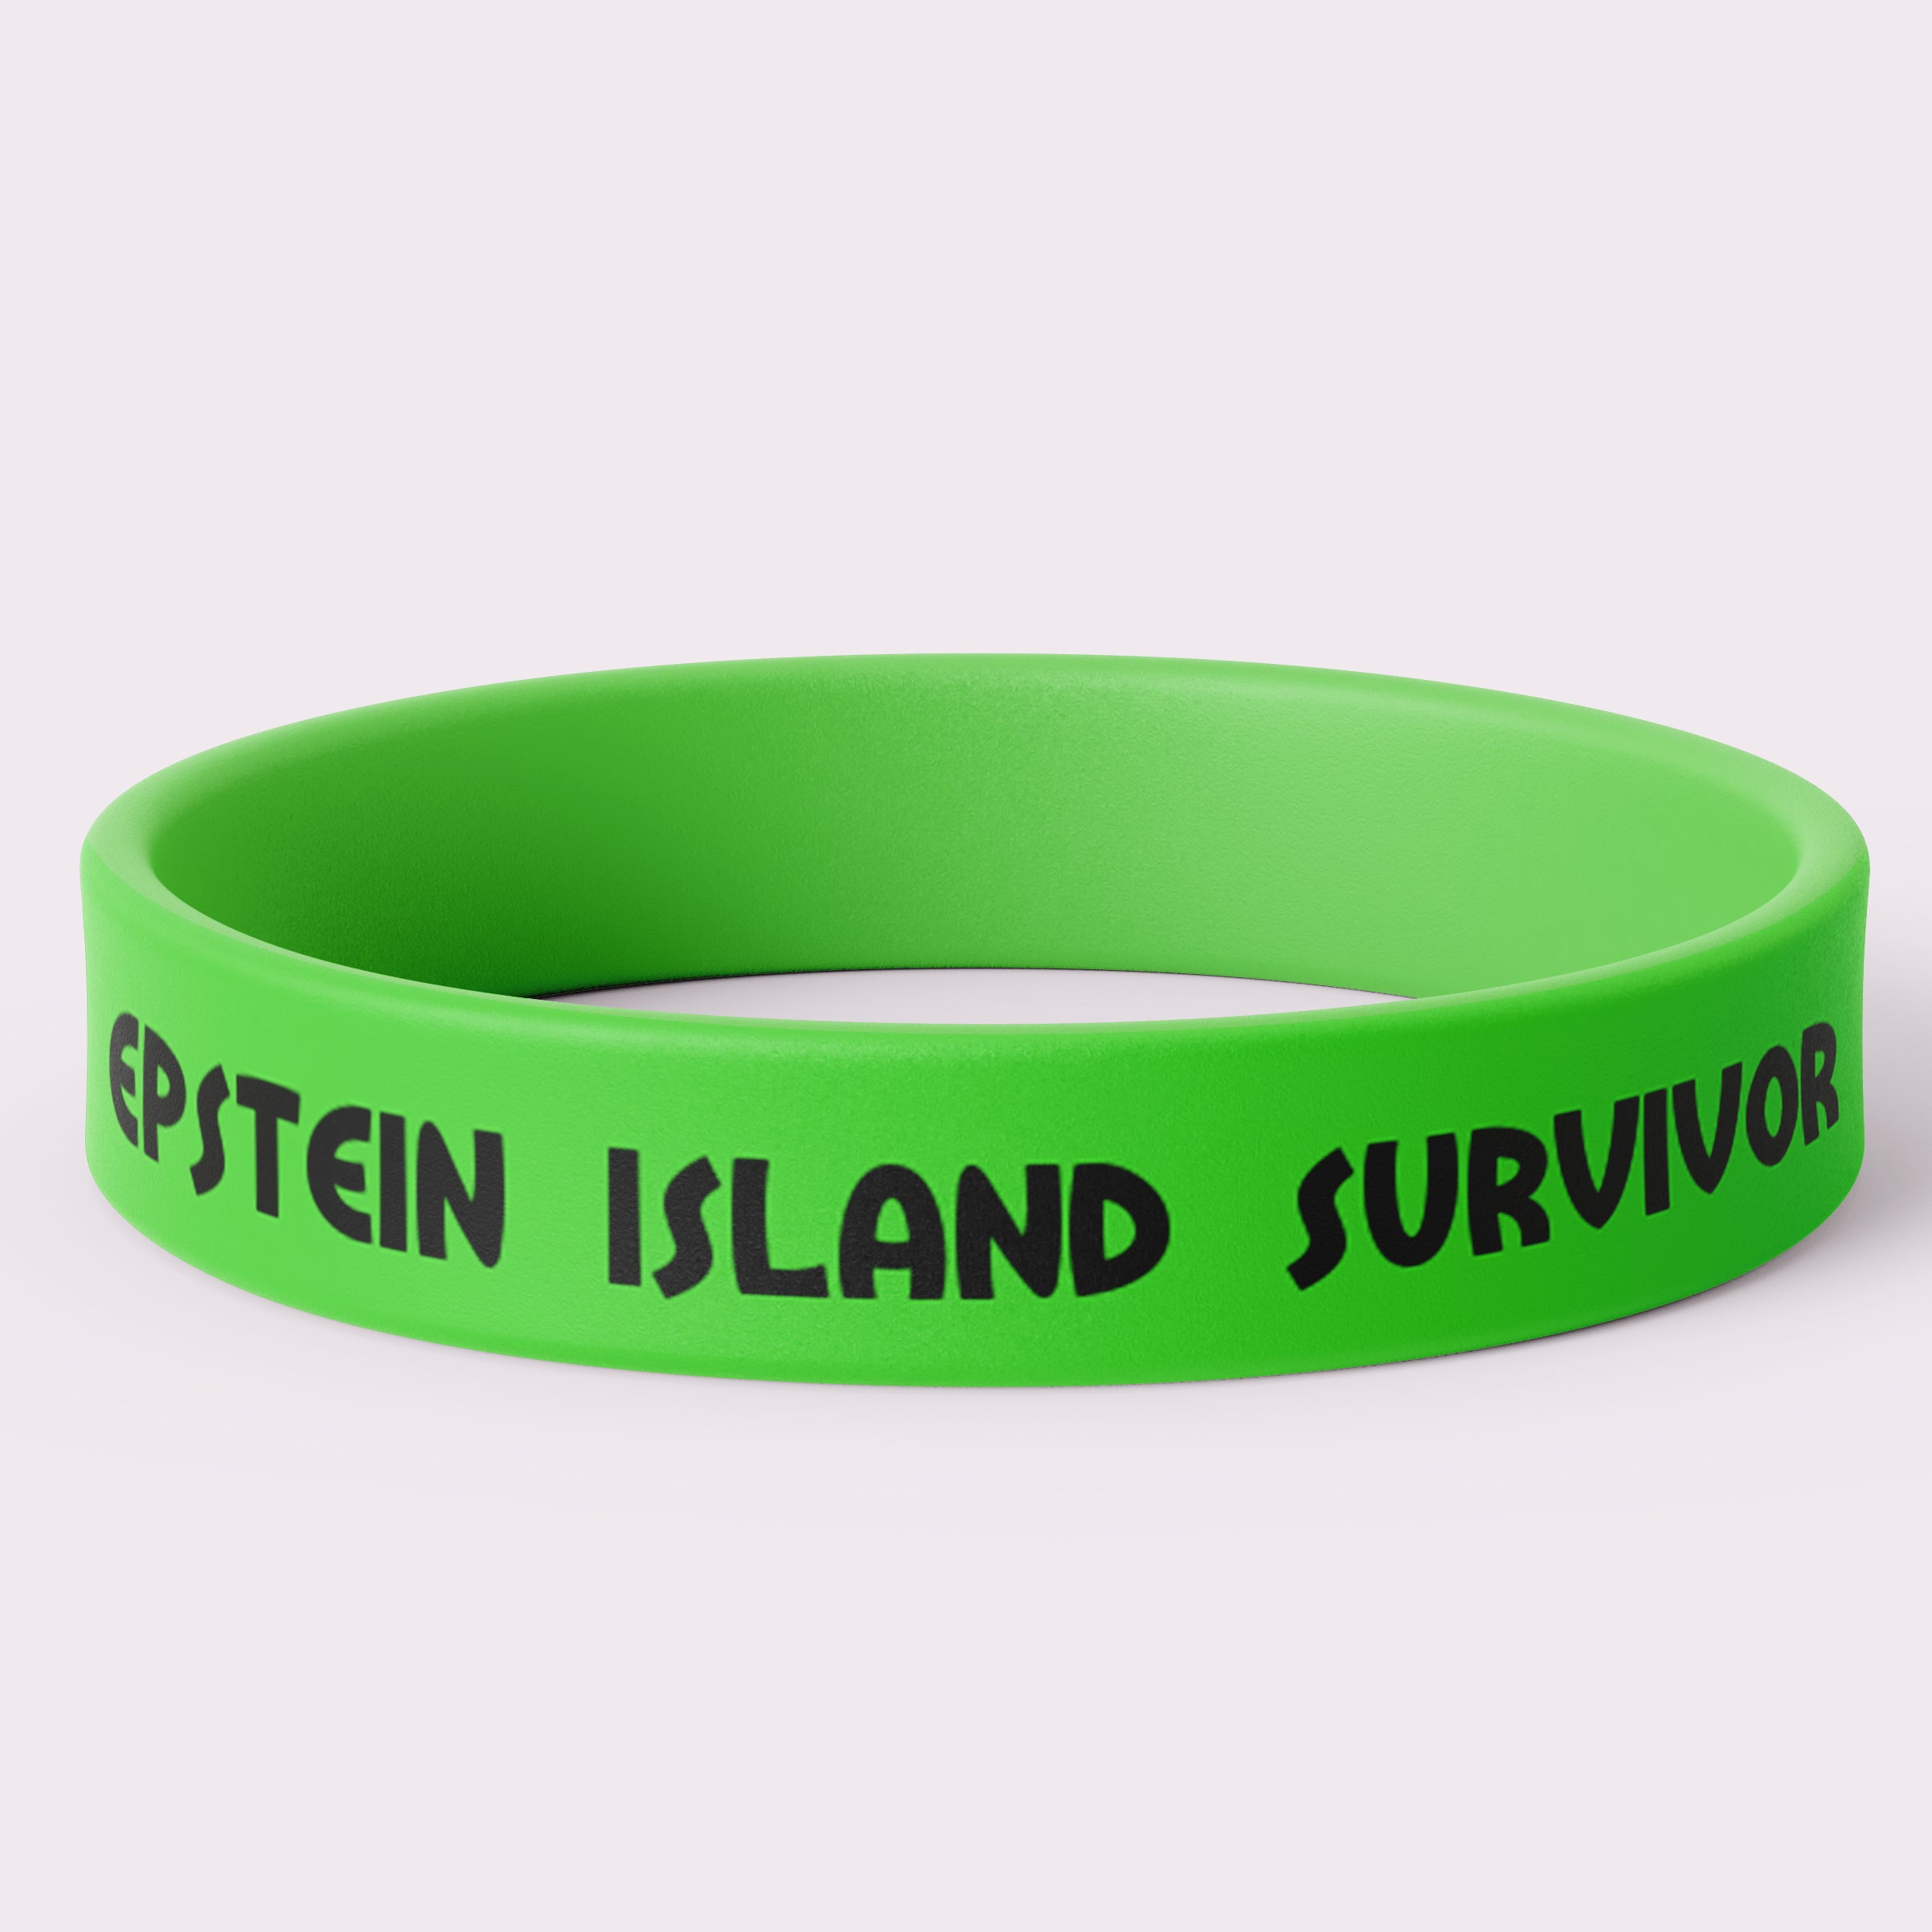 Epstein Island Survivor Wristband